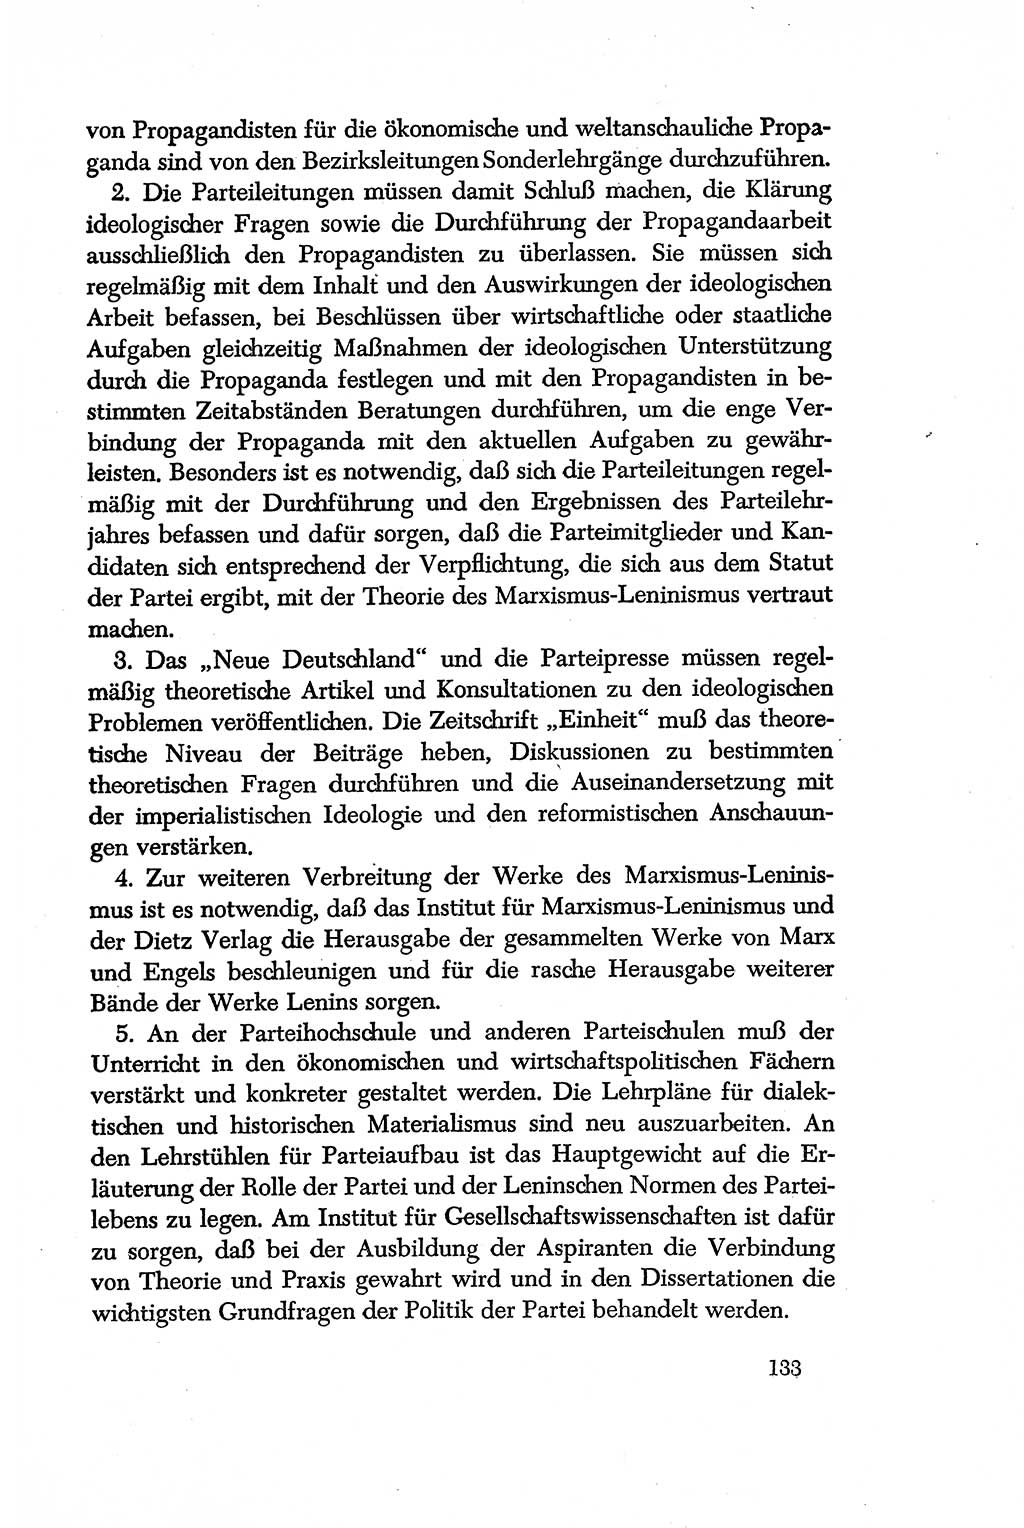 Dokumente der Sozialistischen Einheitspartei Deutschlands (SED) [Deutsche Demokratische Republik (DDR)] 1956-1957, Seite 133 (Dok. SED DDR 1956-1957, S. 133)